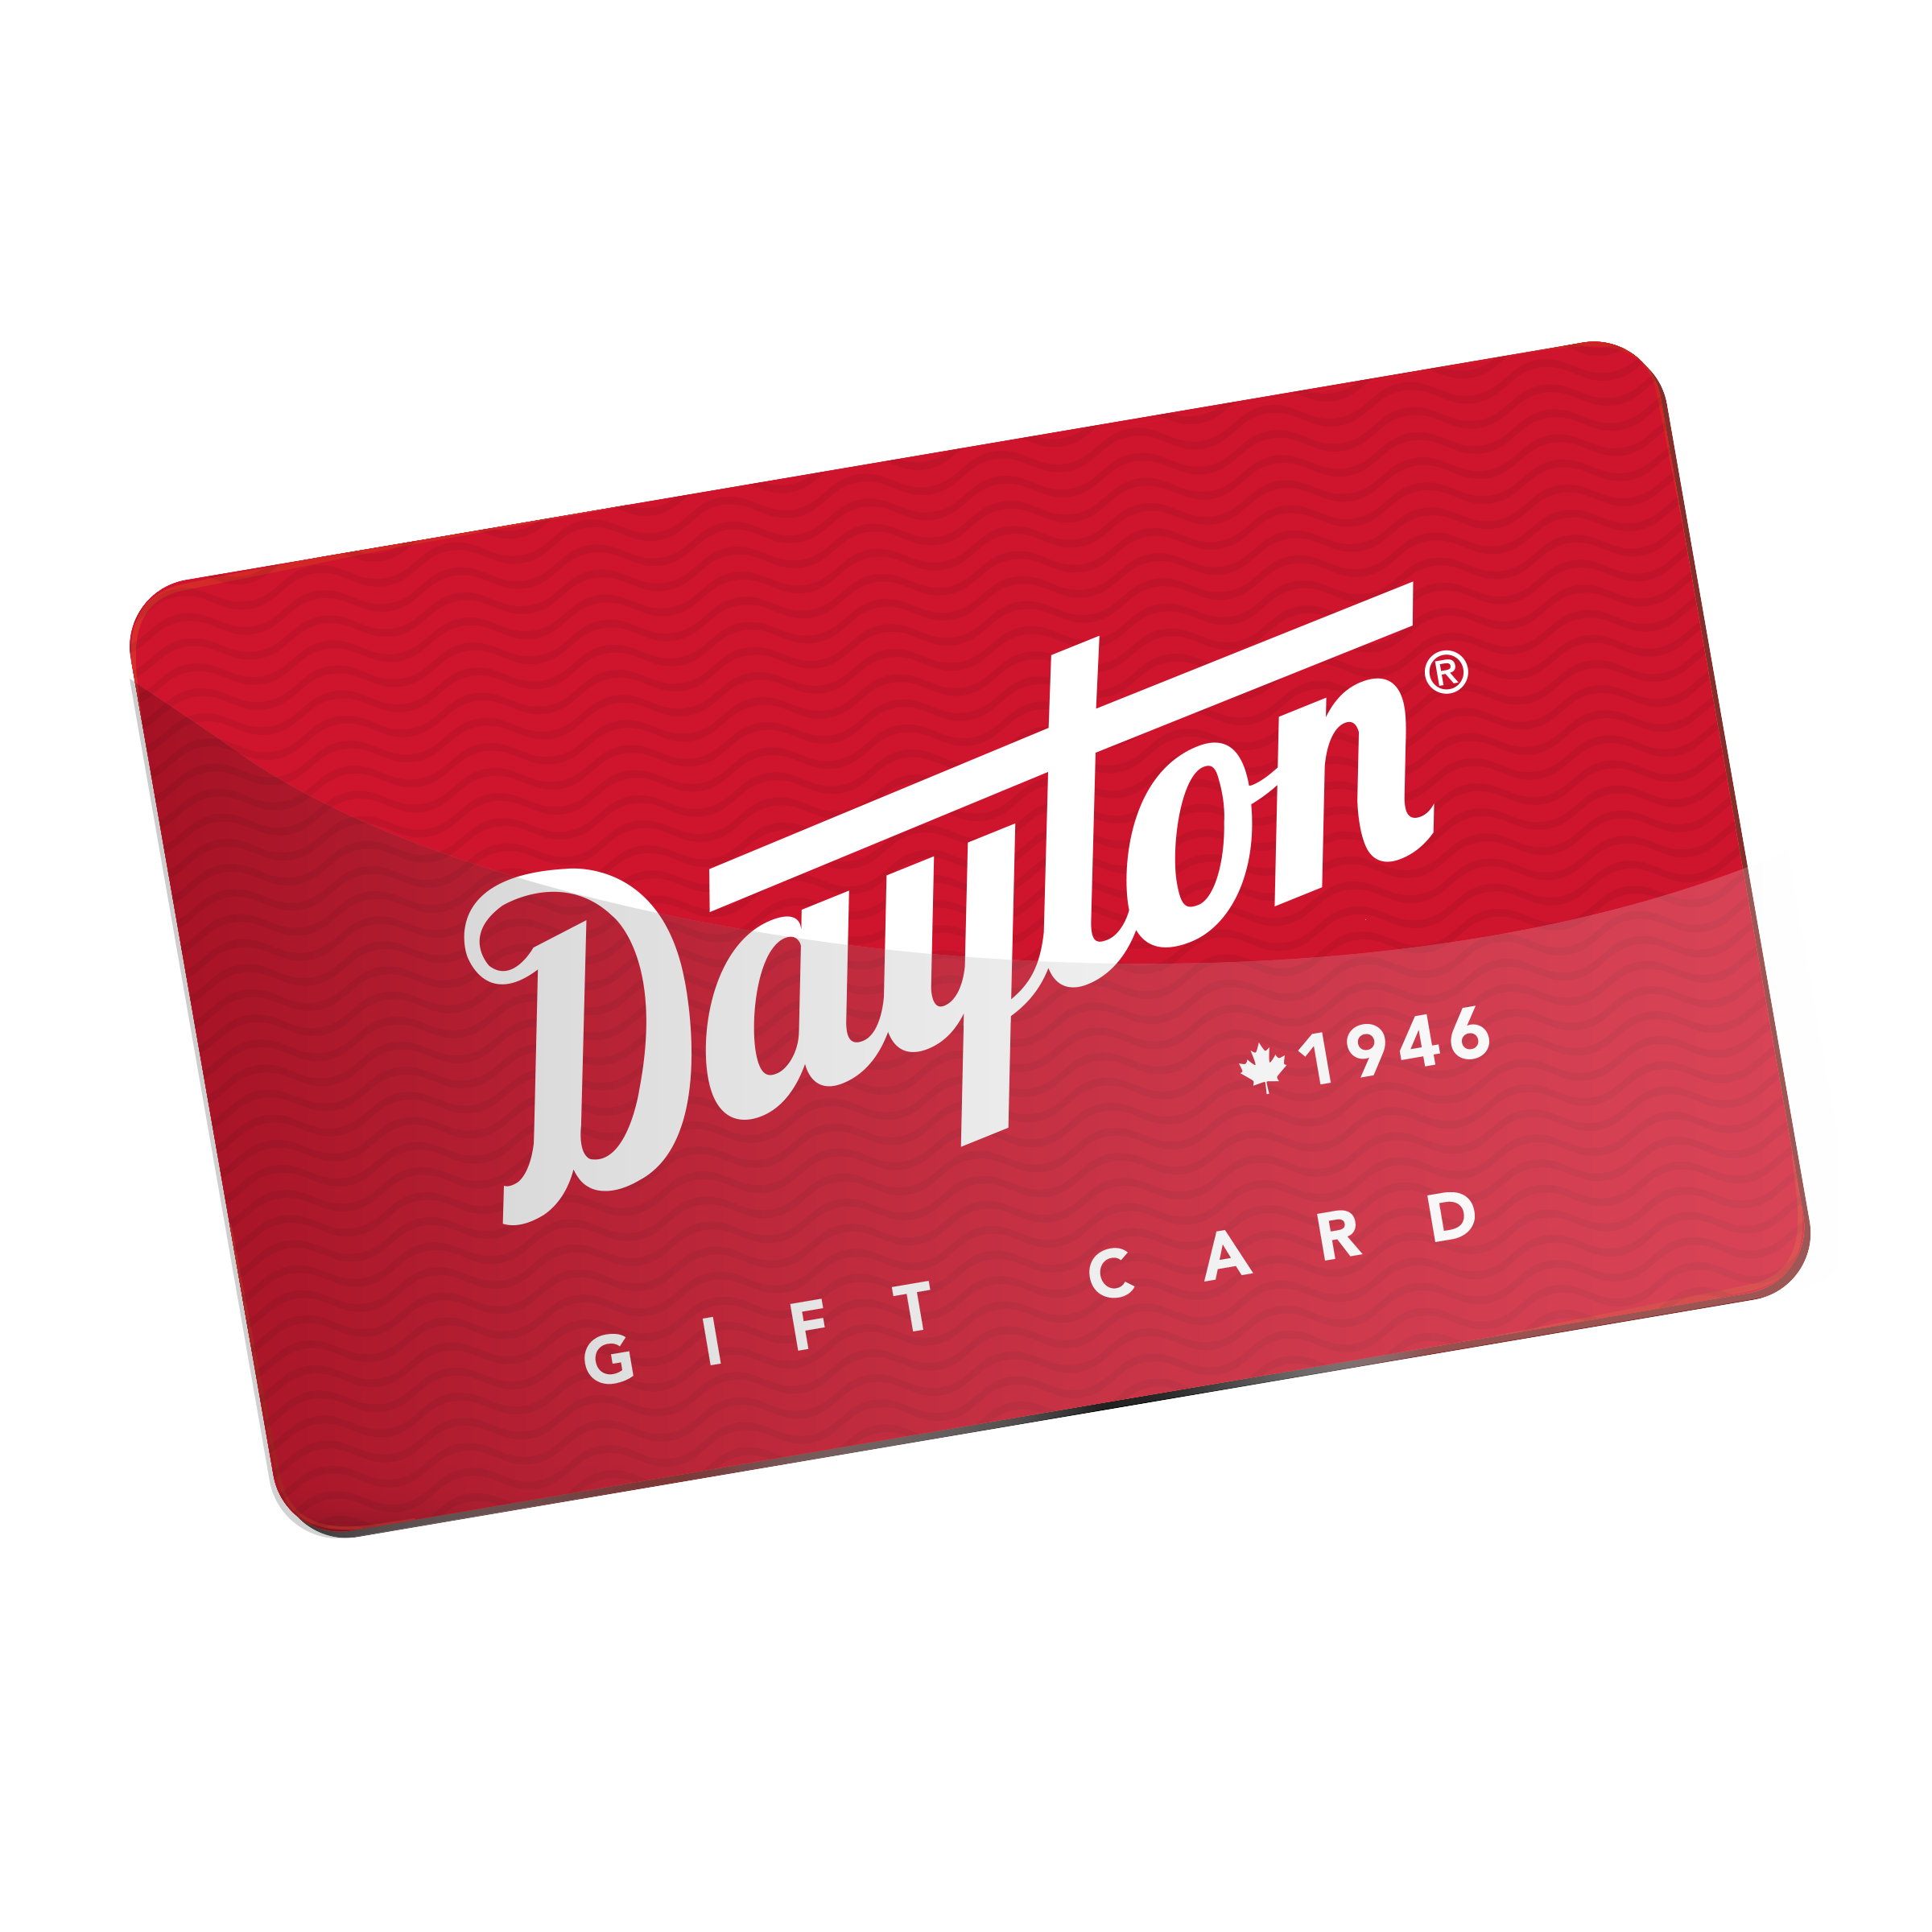 Dayton Gift Card - Gift Card